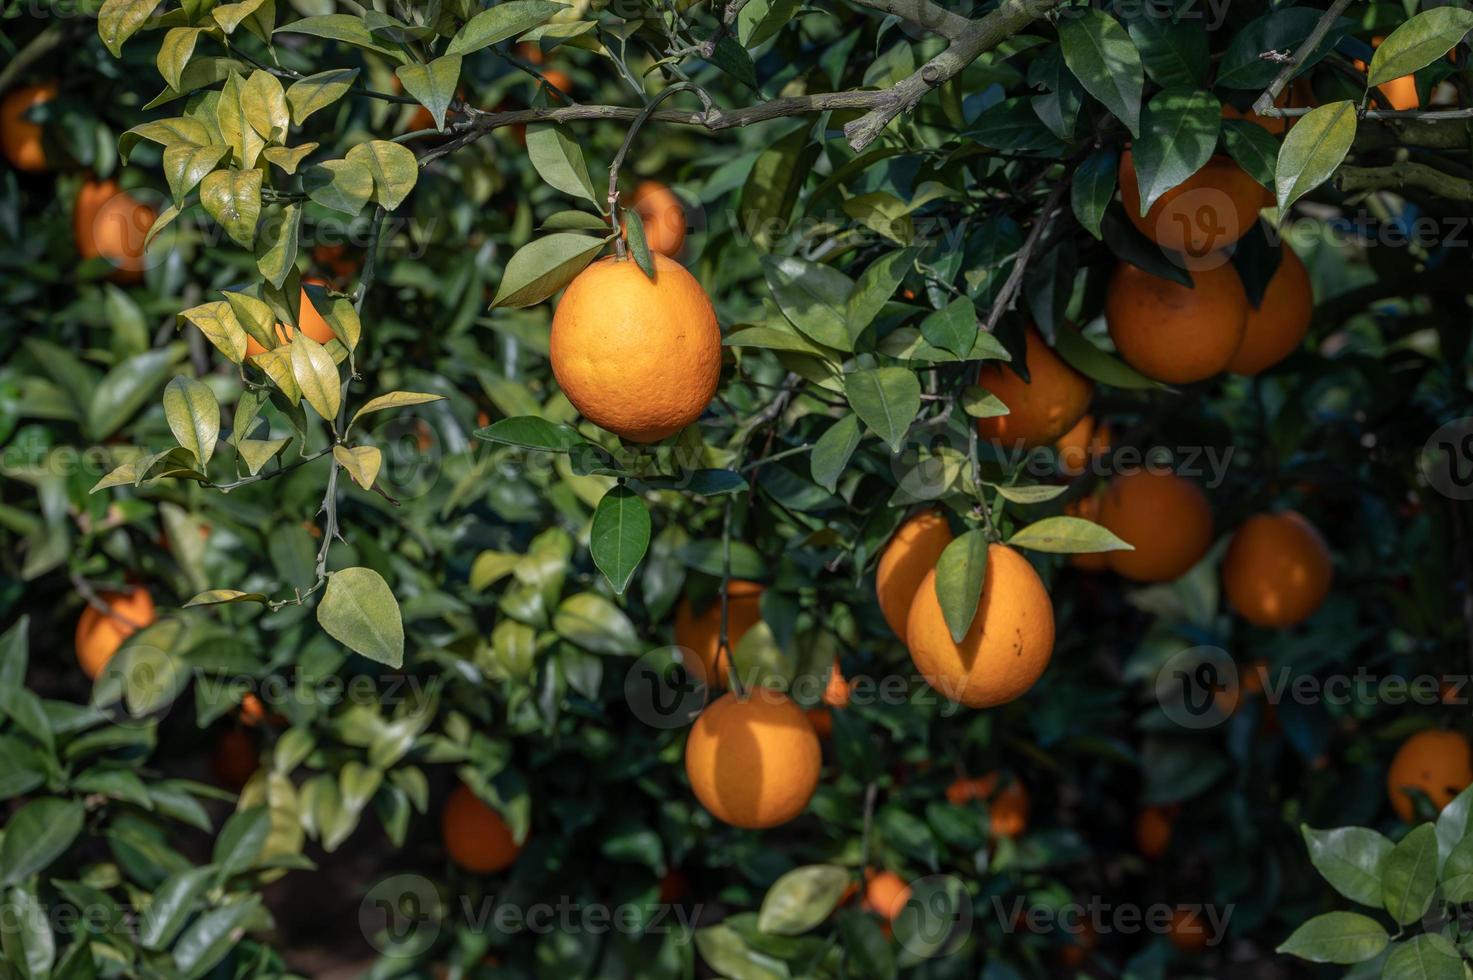 les orangers du verger ont eu une bonne récolte, et les branches et les feuilles vertes étaient couvertes d'oranges dorées photo